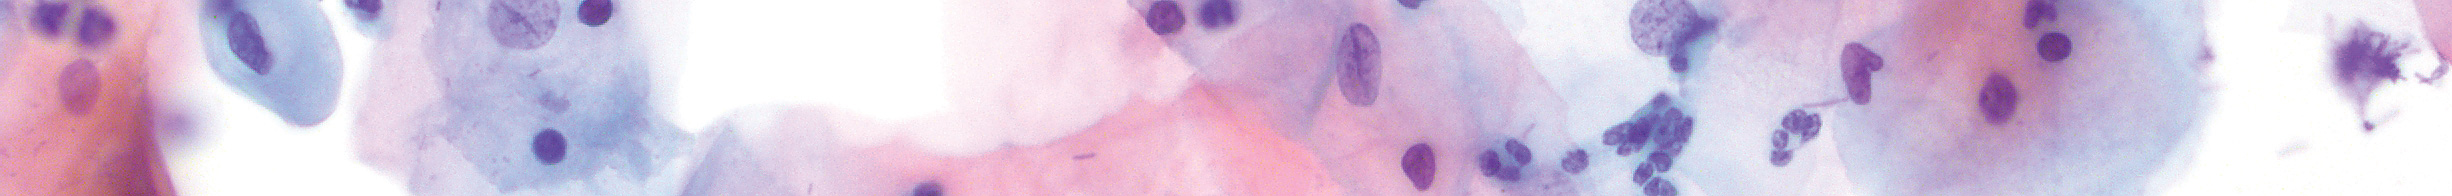 Tissue marking dye, lilac